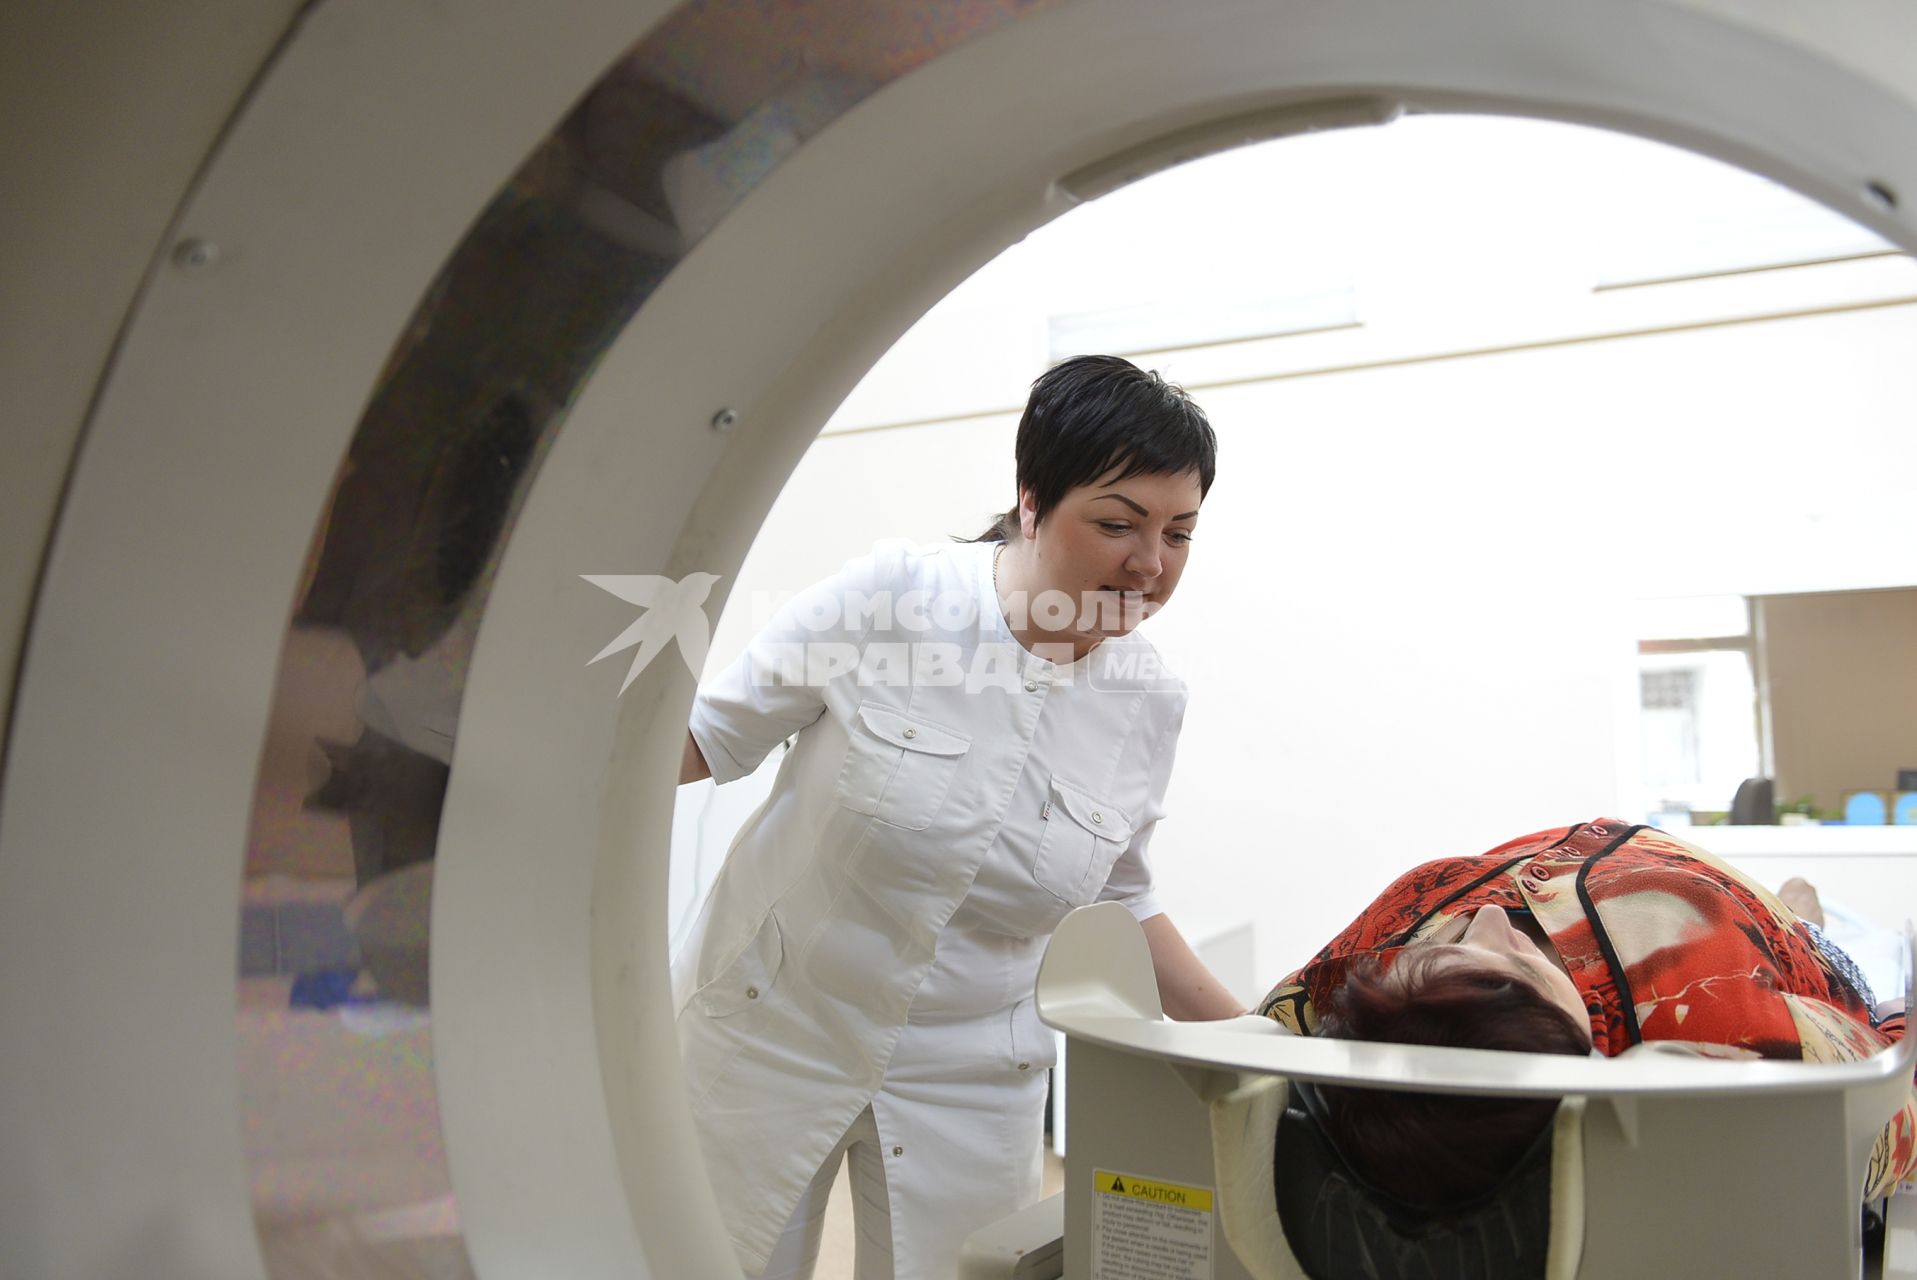 Тула.  Пациентка во время рентгеновской компьютерной томографии  в одной из больниц города.